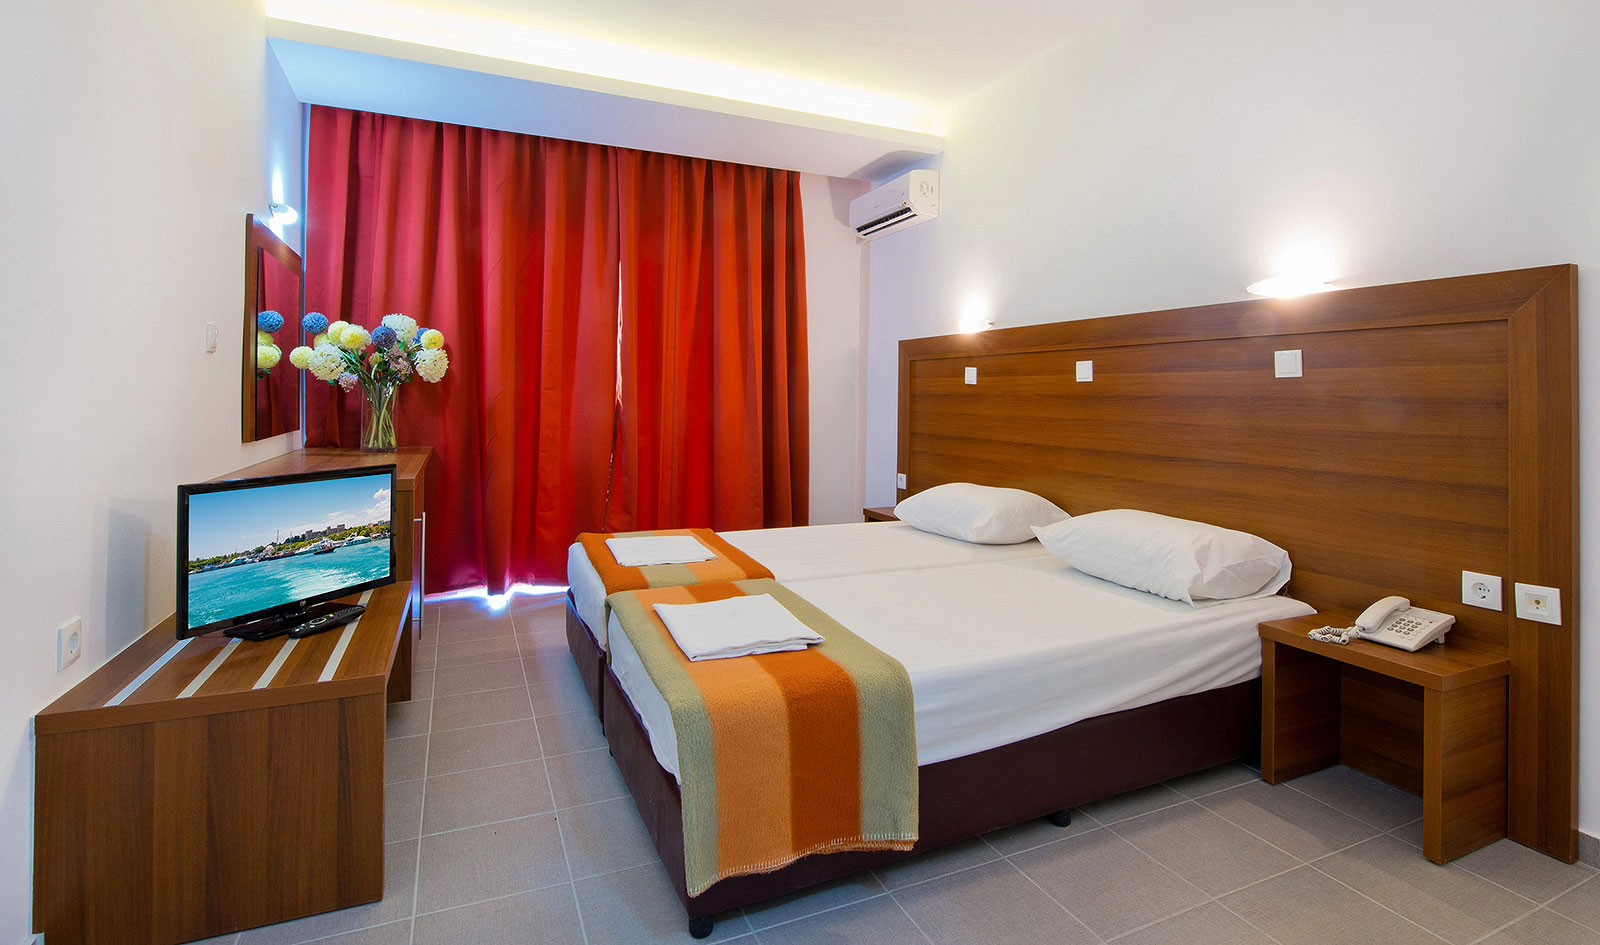 Μεγάλη πτώση στις τιμές ξενοδοχείων στη Λάρισα